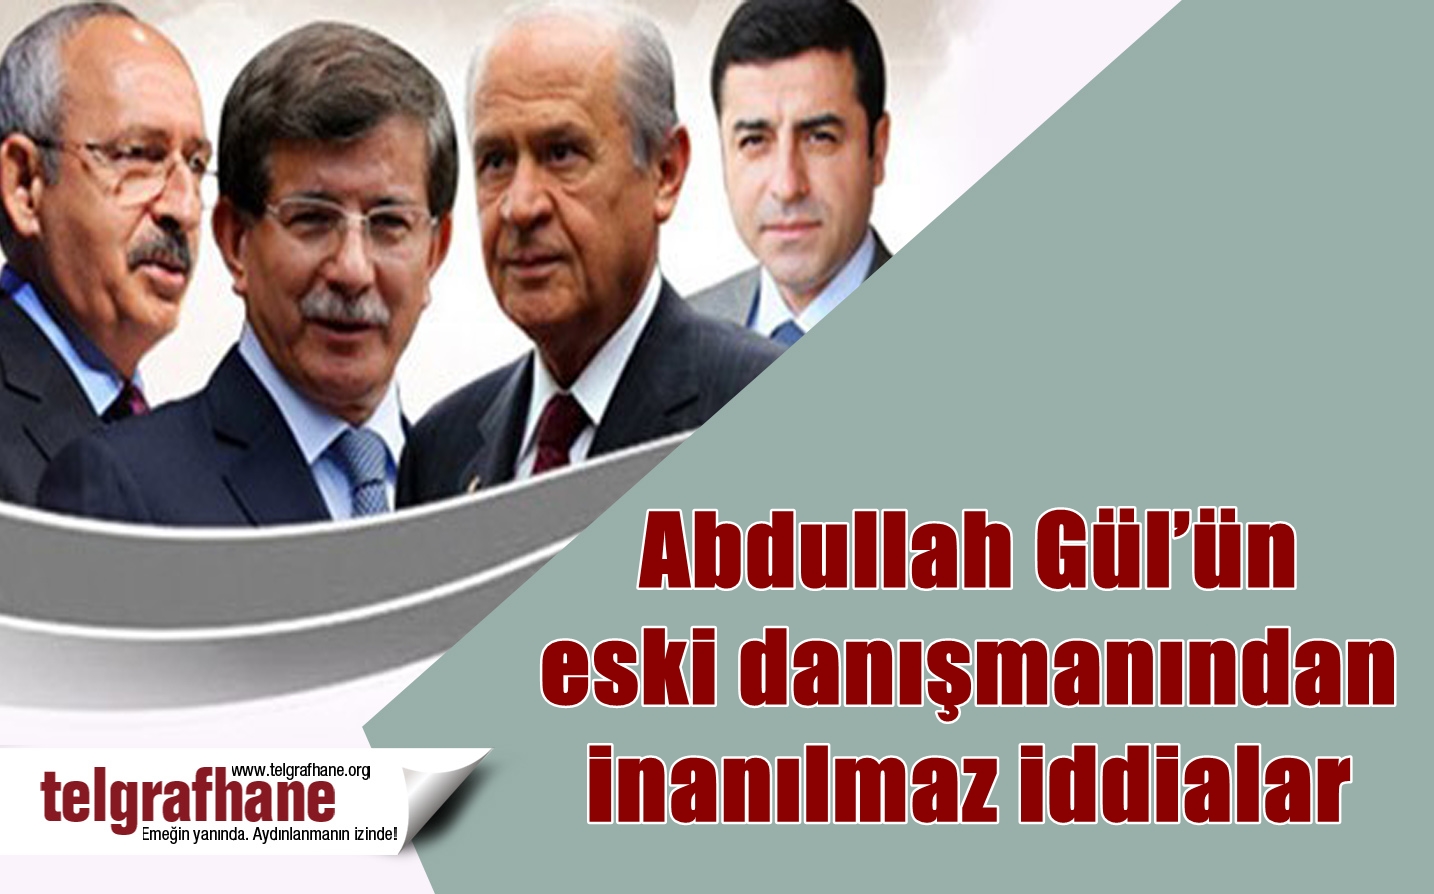 Abdullah Gül’ün eski danışmanından inanılmaz iddialar